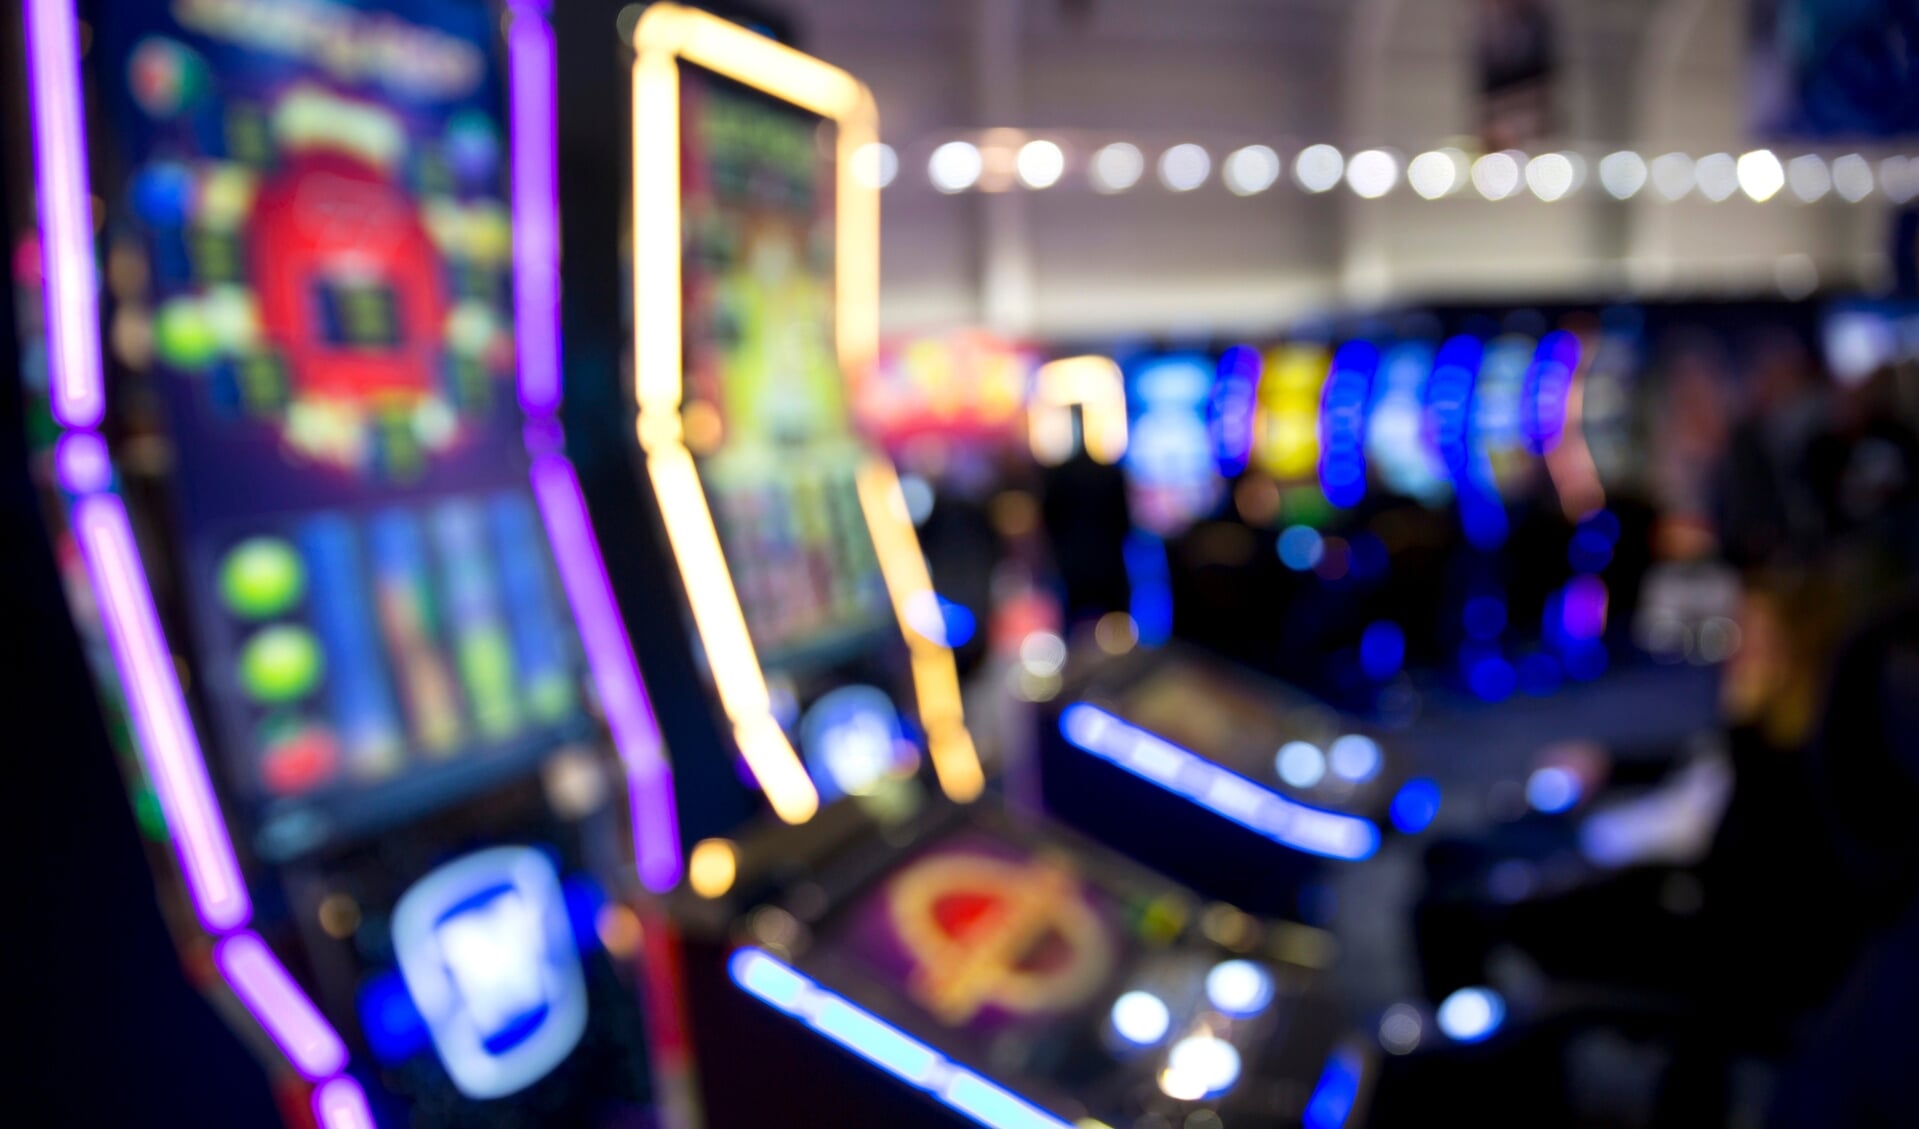 Blurred slot machines in a casino.